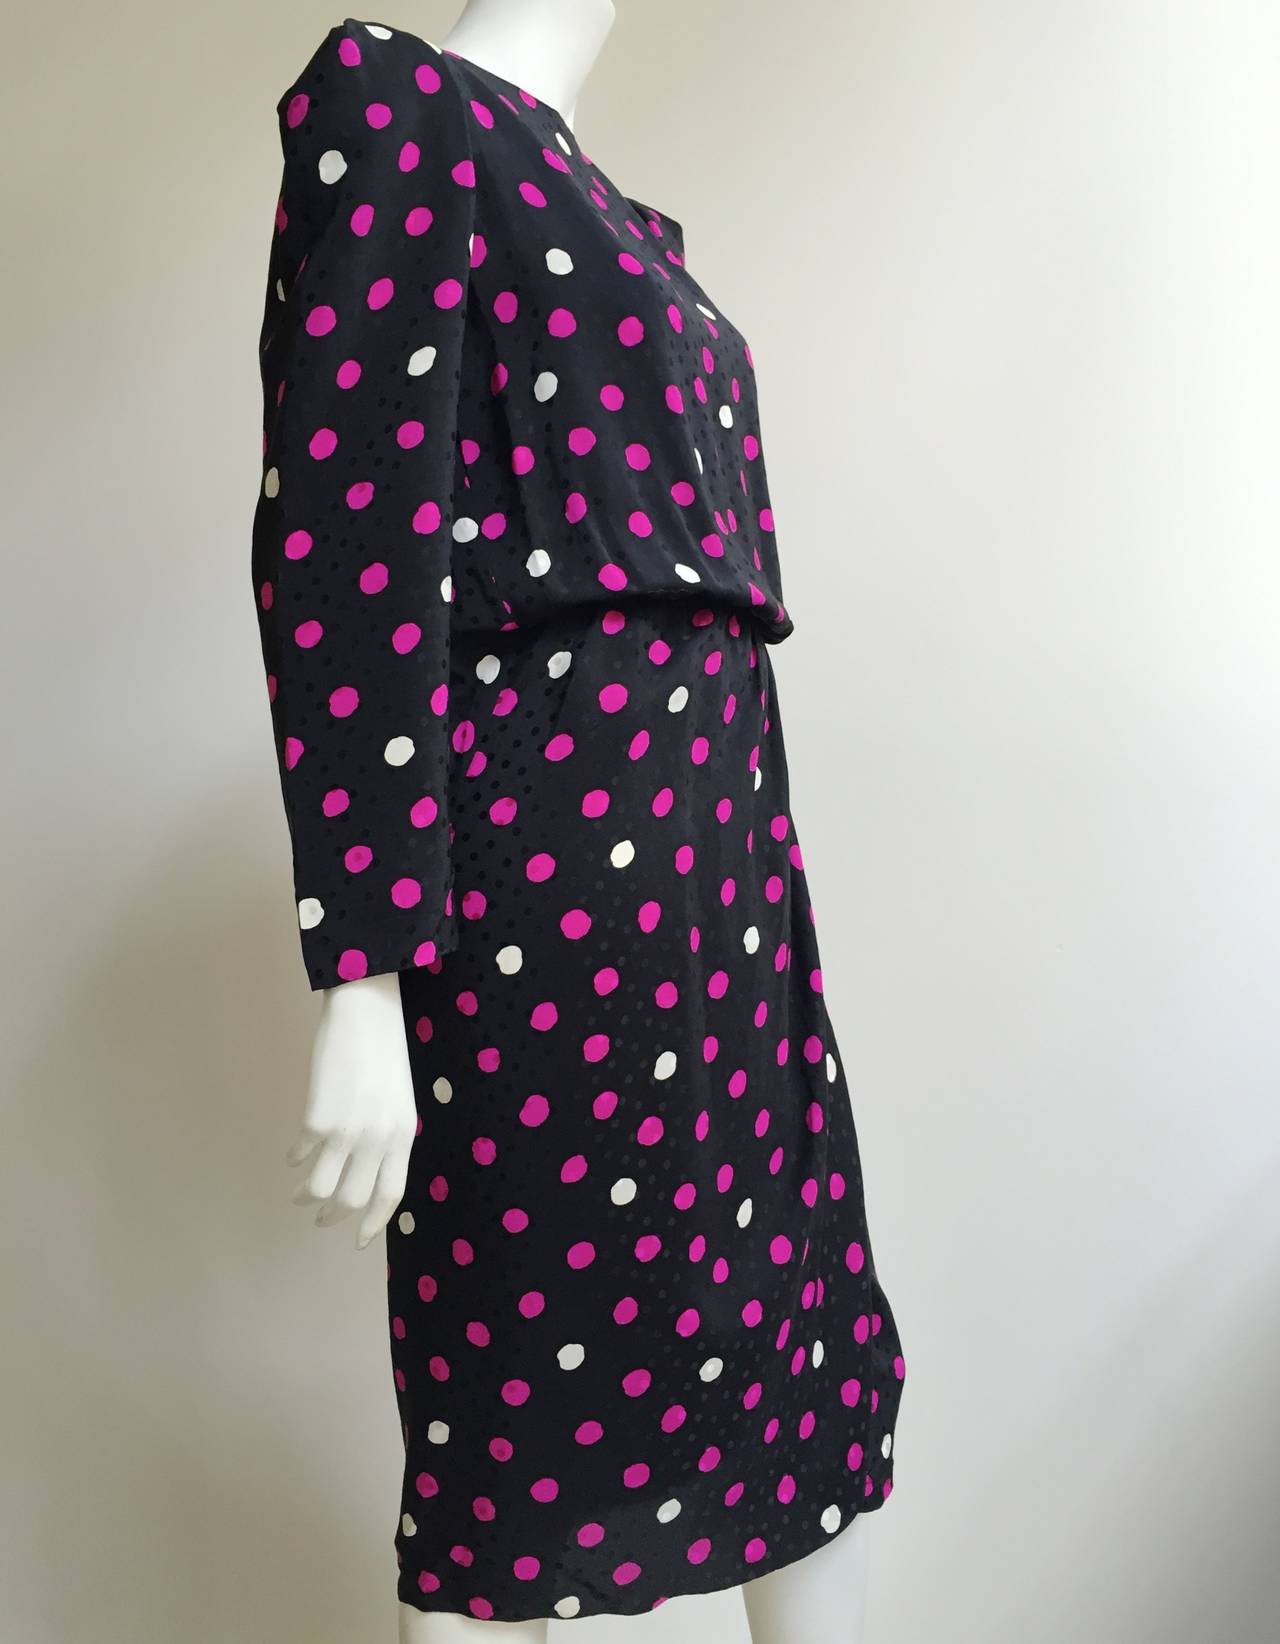 Black Bill Blass 70s Silk Polka Dot Dress With Cape Size 8.